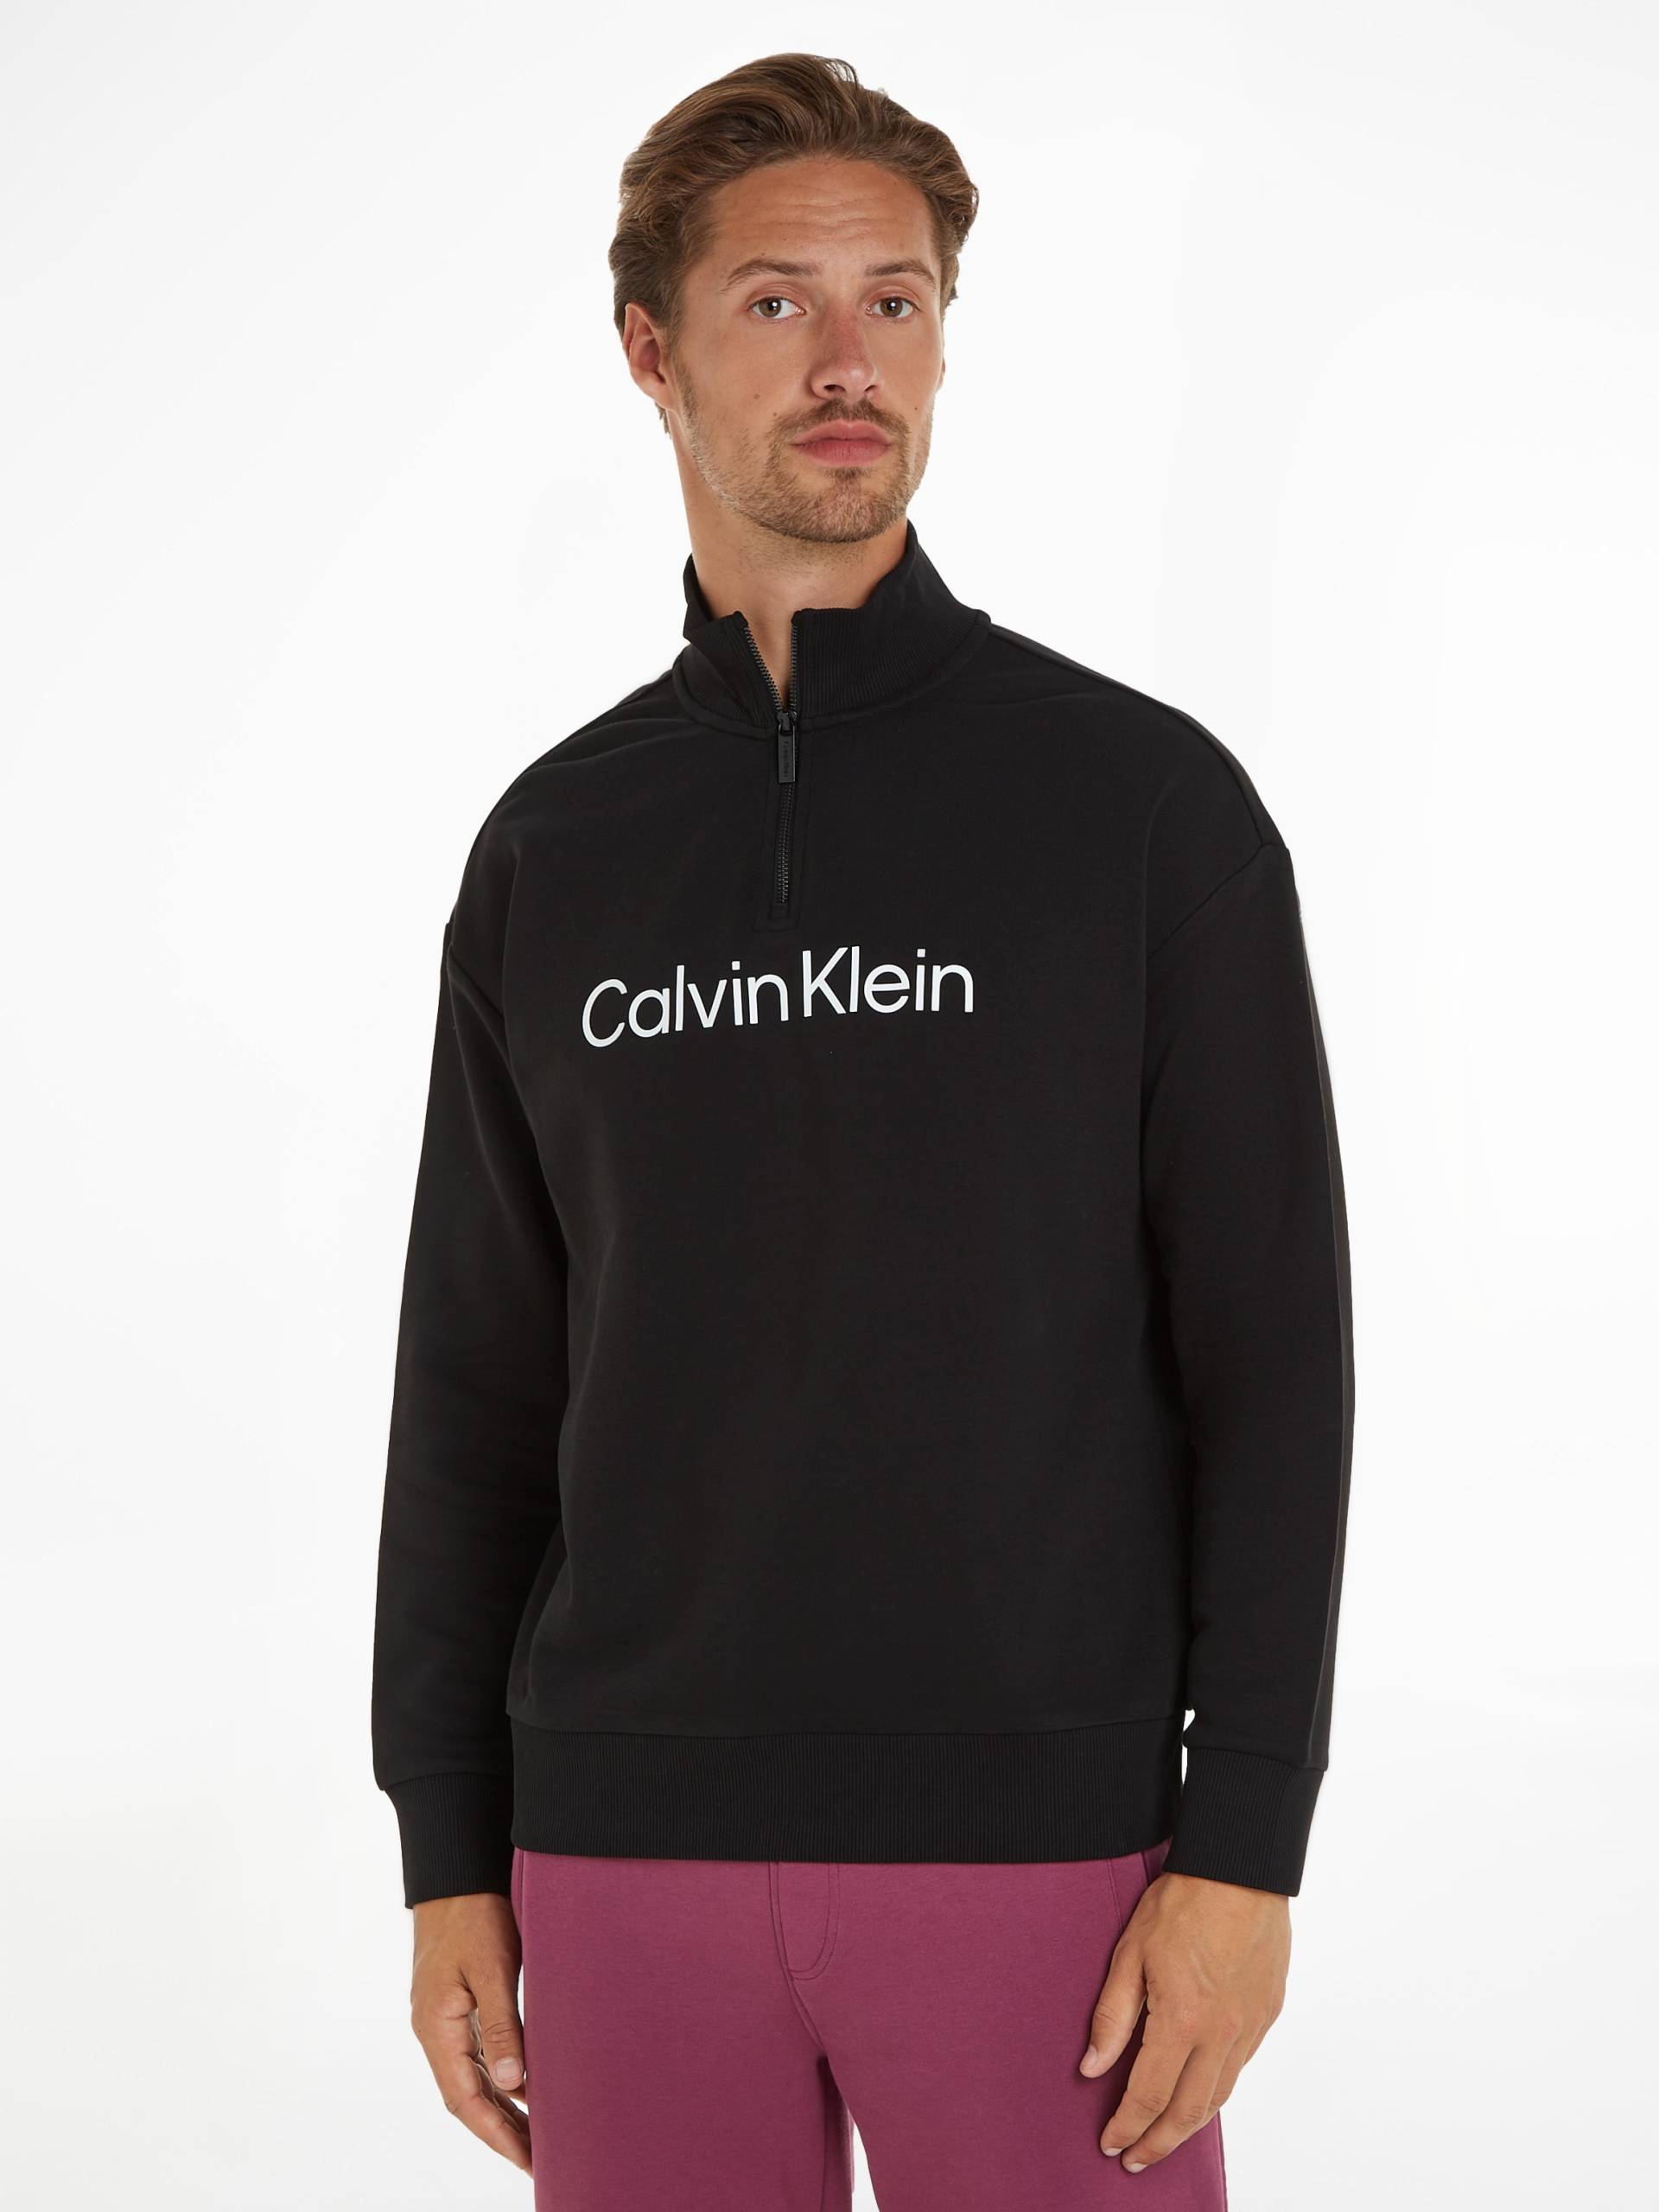 Calvin Klein Sweatshirt »HERO LOGO COMFORT QUARTER ZIP« von Calvin Klein